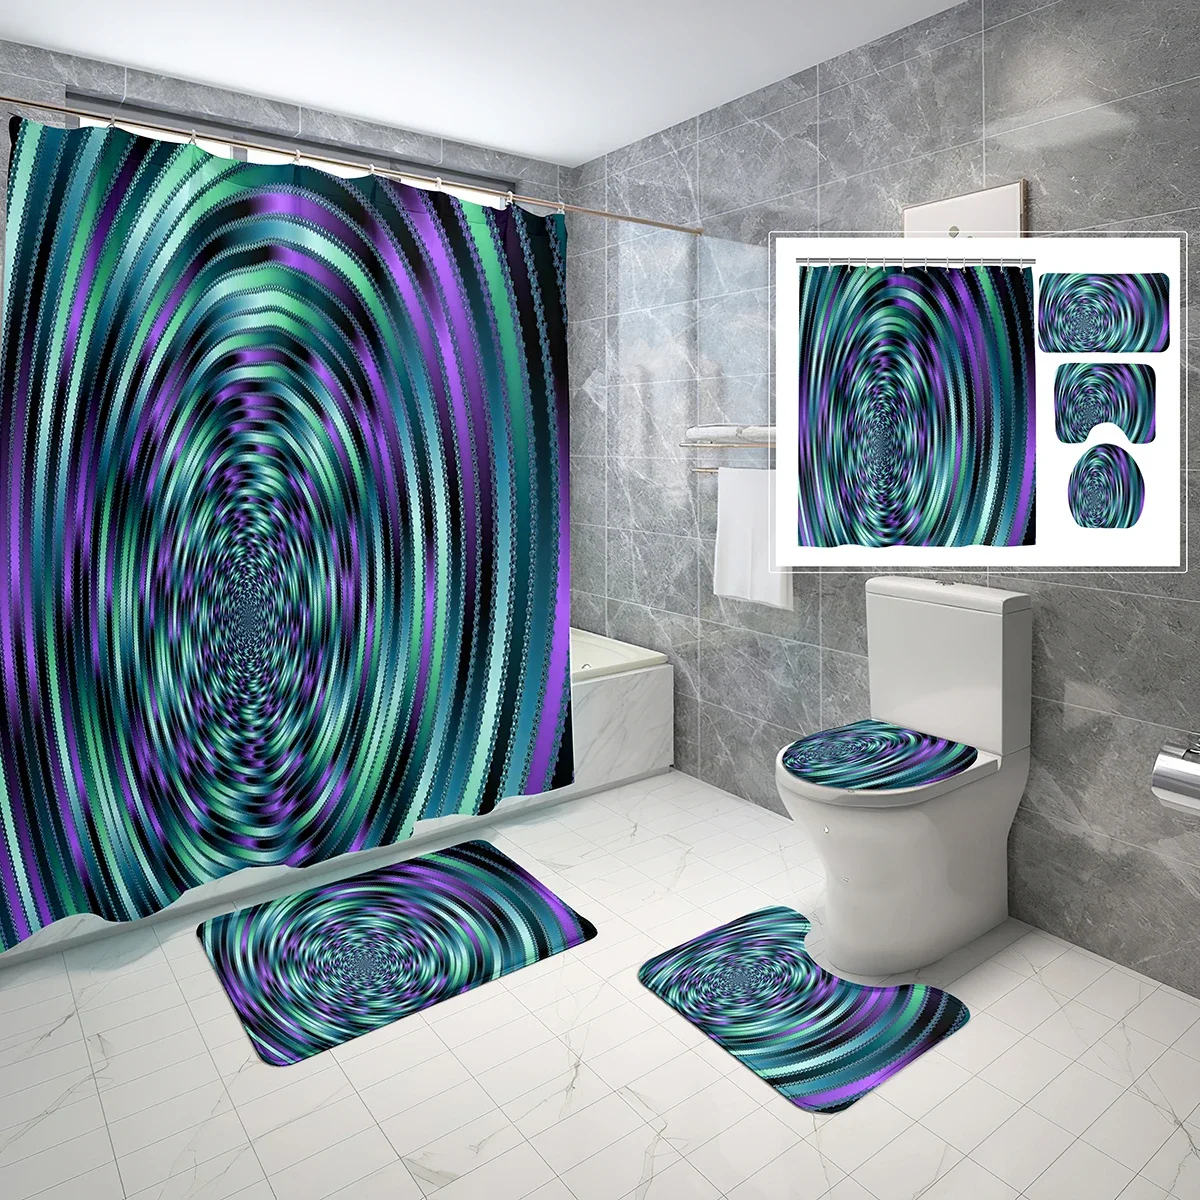 

Абстрактная Иллюзия душевая занавеска набор спиральный психоделический дизайн 4 шт. душевая занавеска ванная комната нескользящий Коврик для ванны крышка для туалета